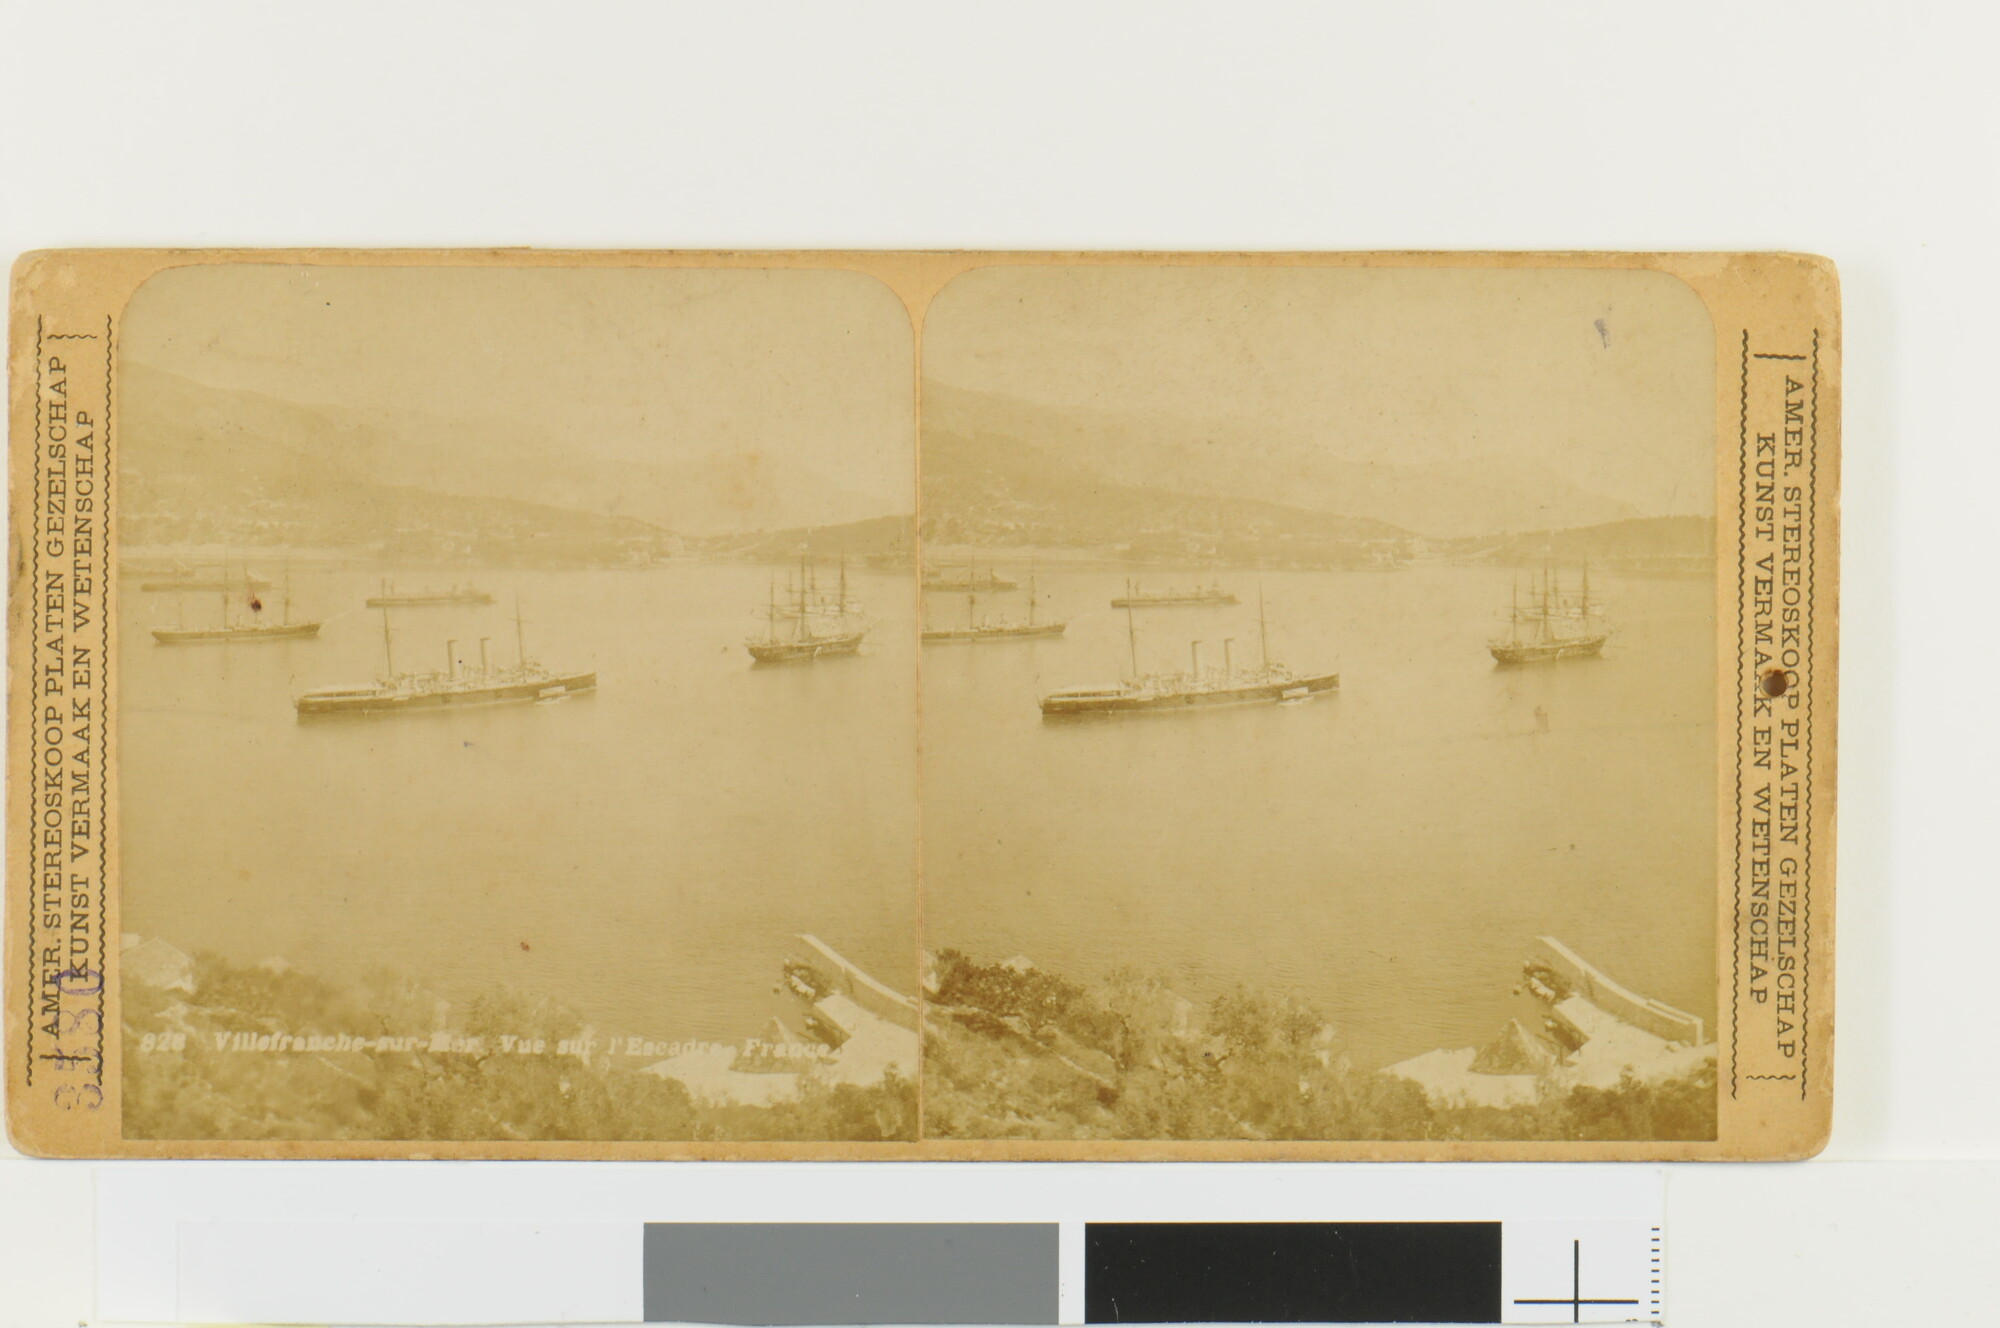 A.4485(02)12; Stereofoto van het Franse marine-eskader in de baai van Villefrance rond 1900; foto